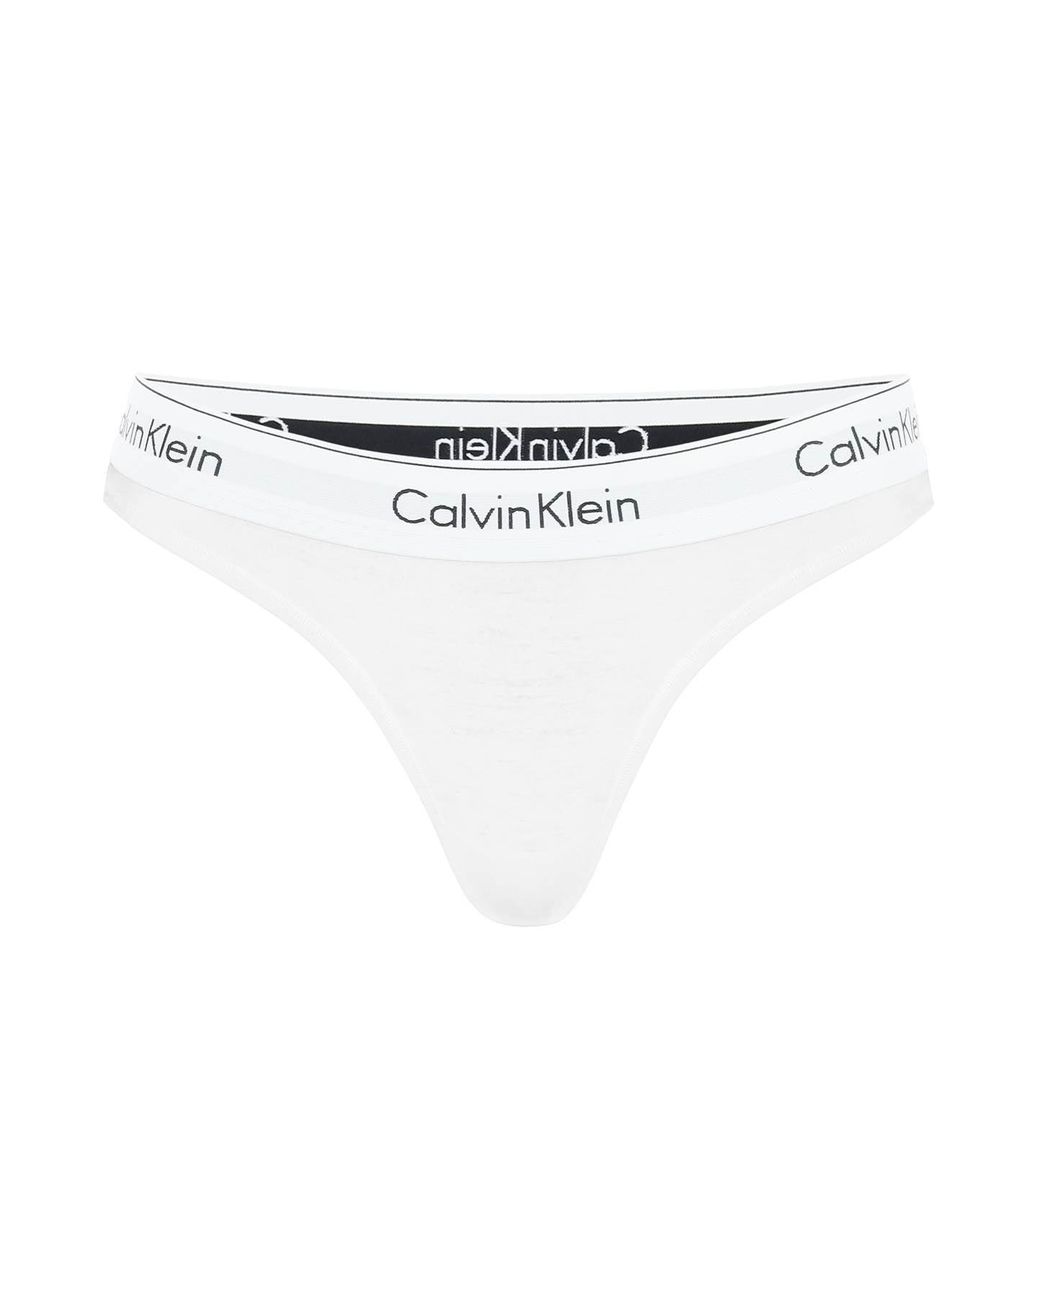 Calvin Klein Branded Border Thongs in White | Lyst